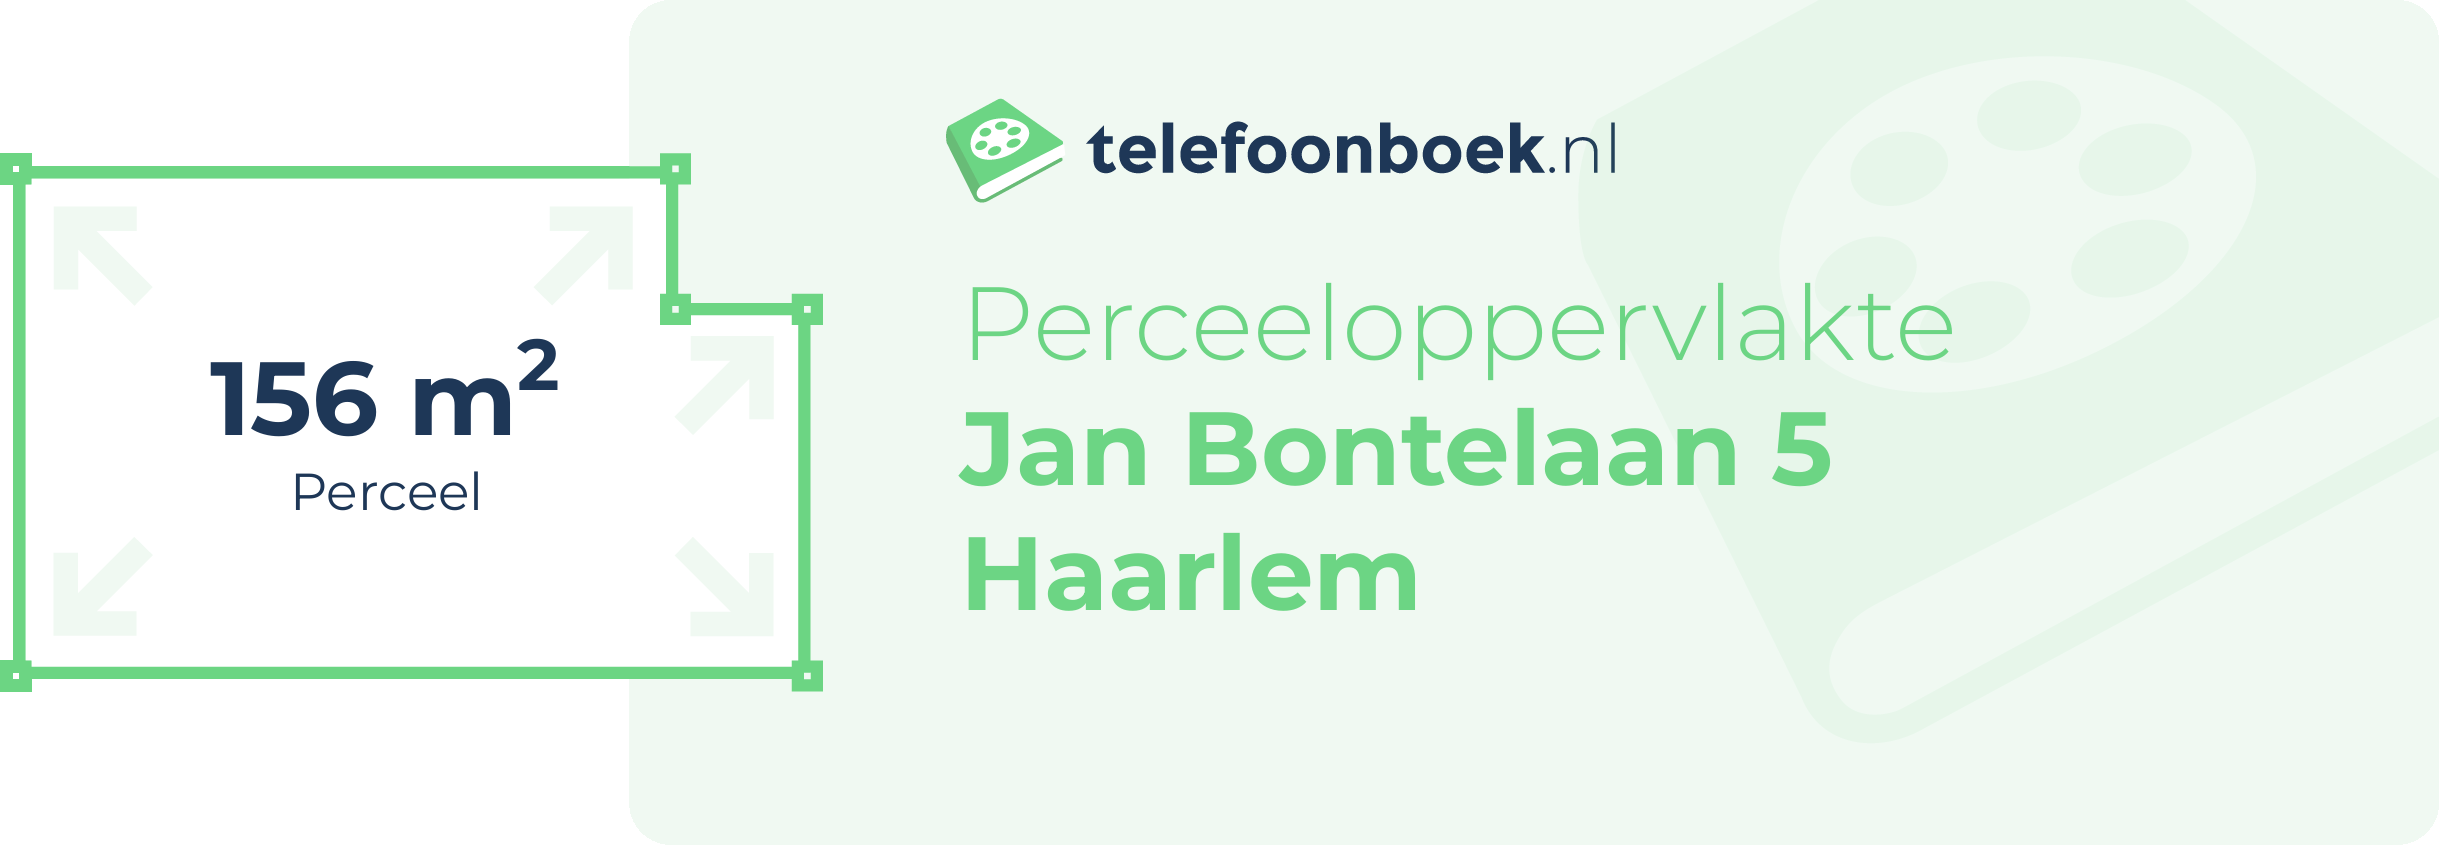 Perceeloppervlakte Jan Bontelaan 5 Haarlem